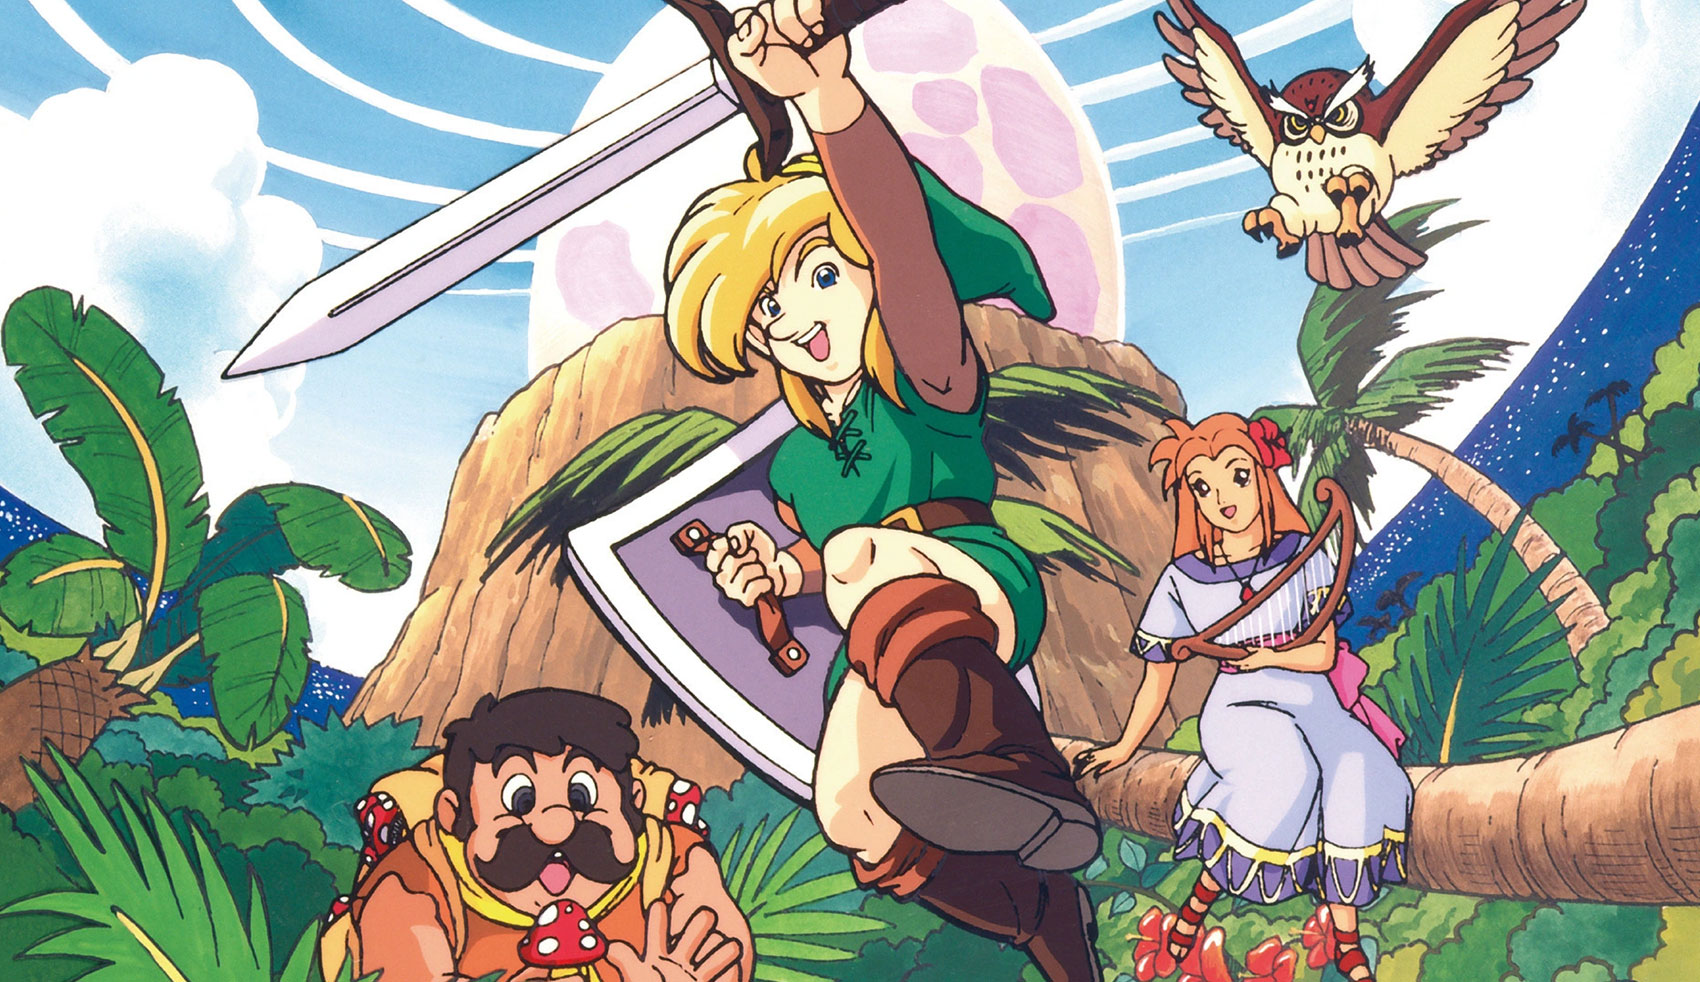 Zelda: detonado incrível de Link's Awakening é disponibilizado na